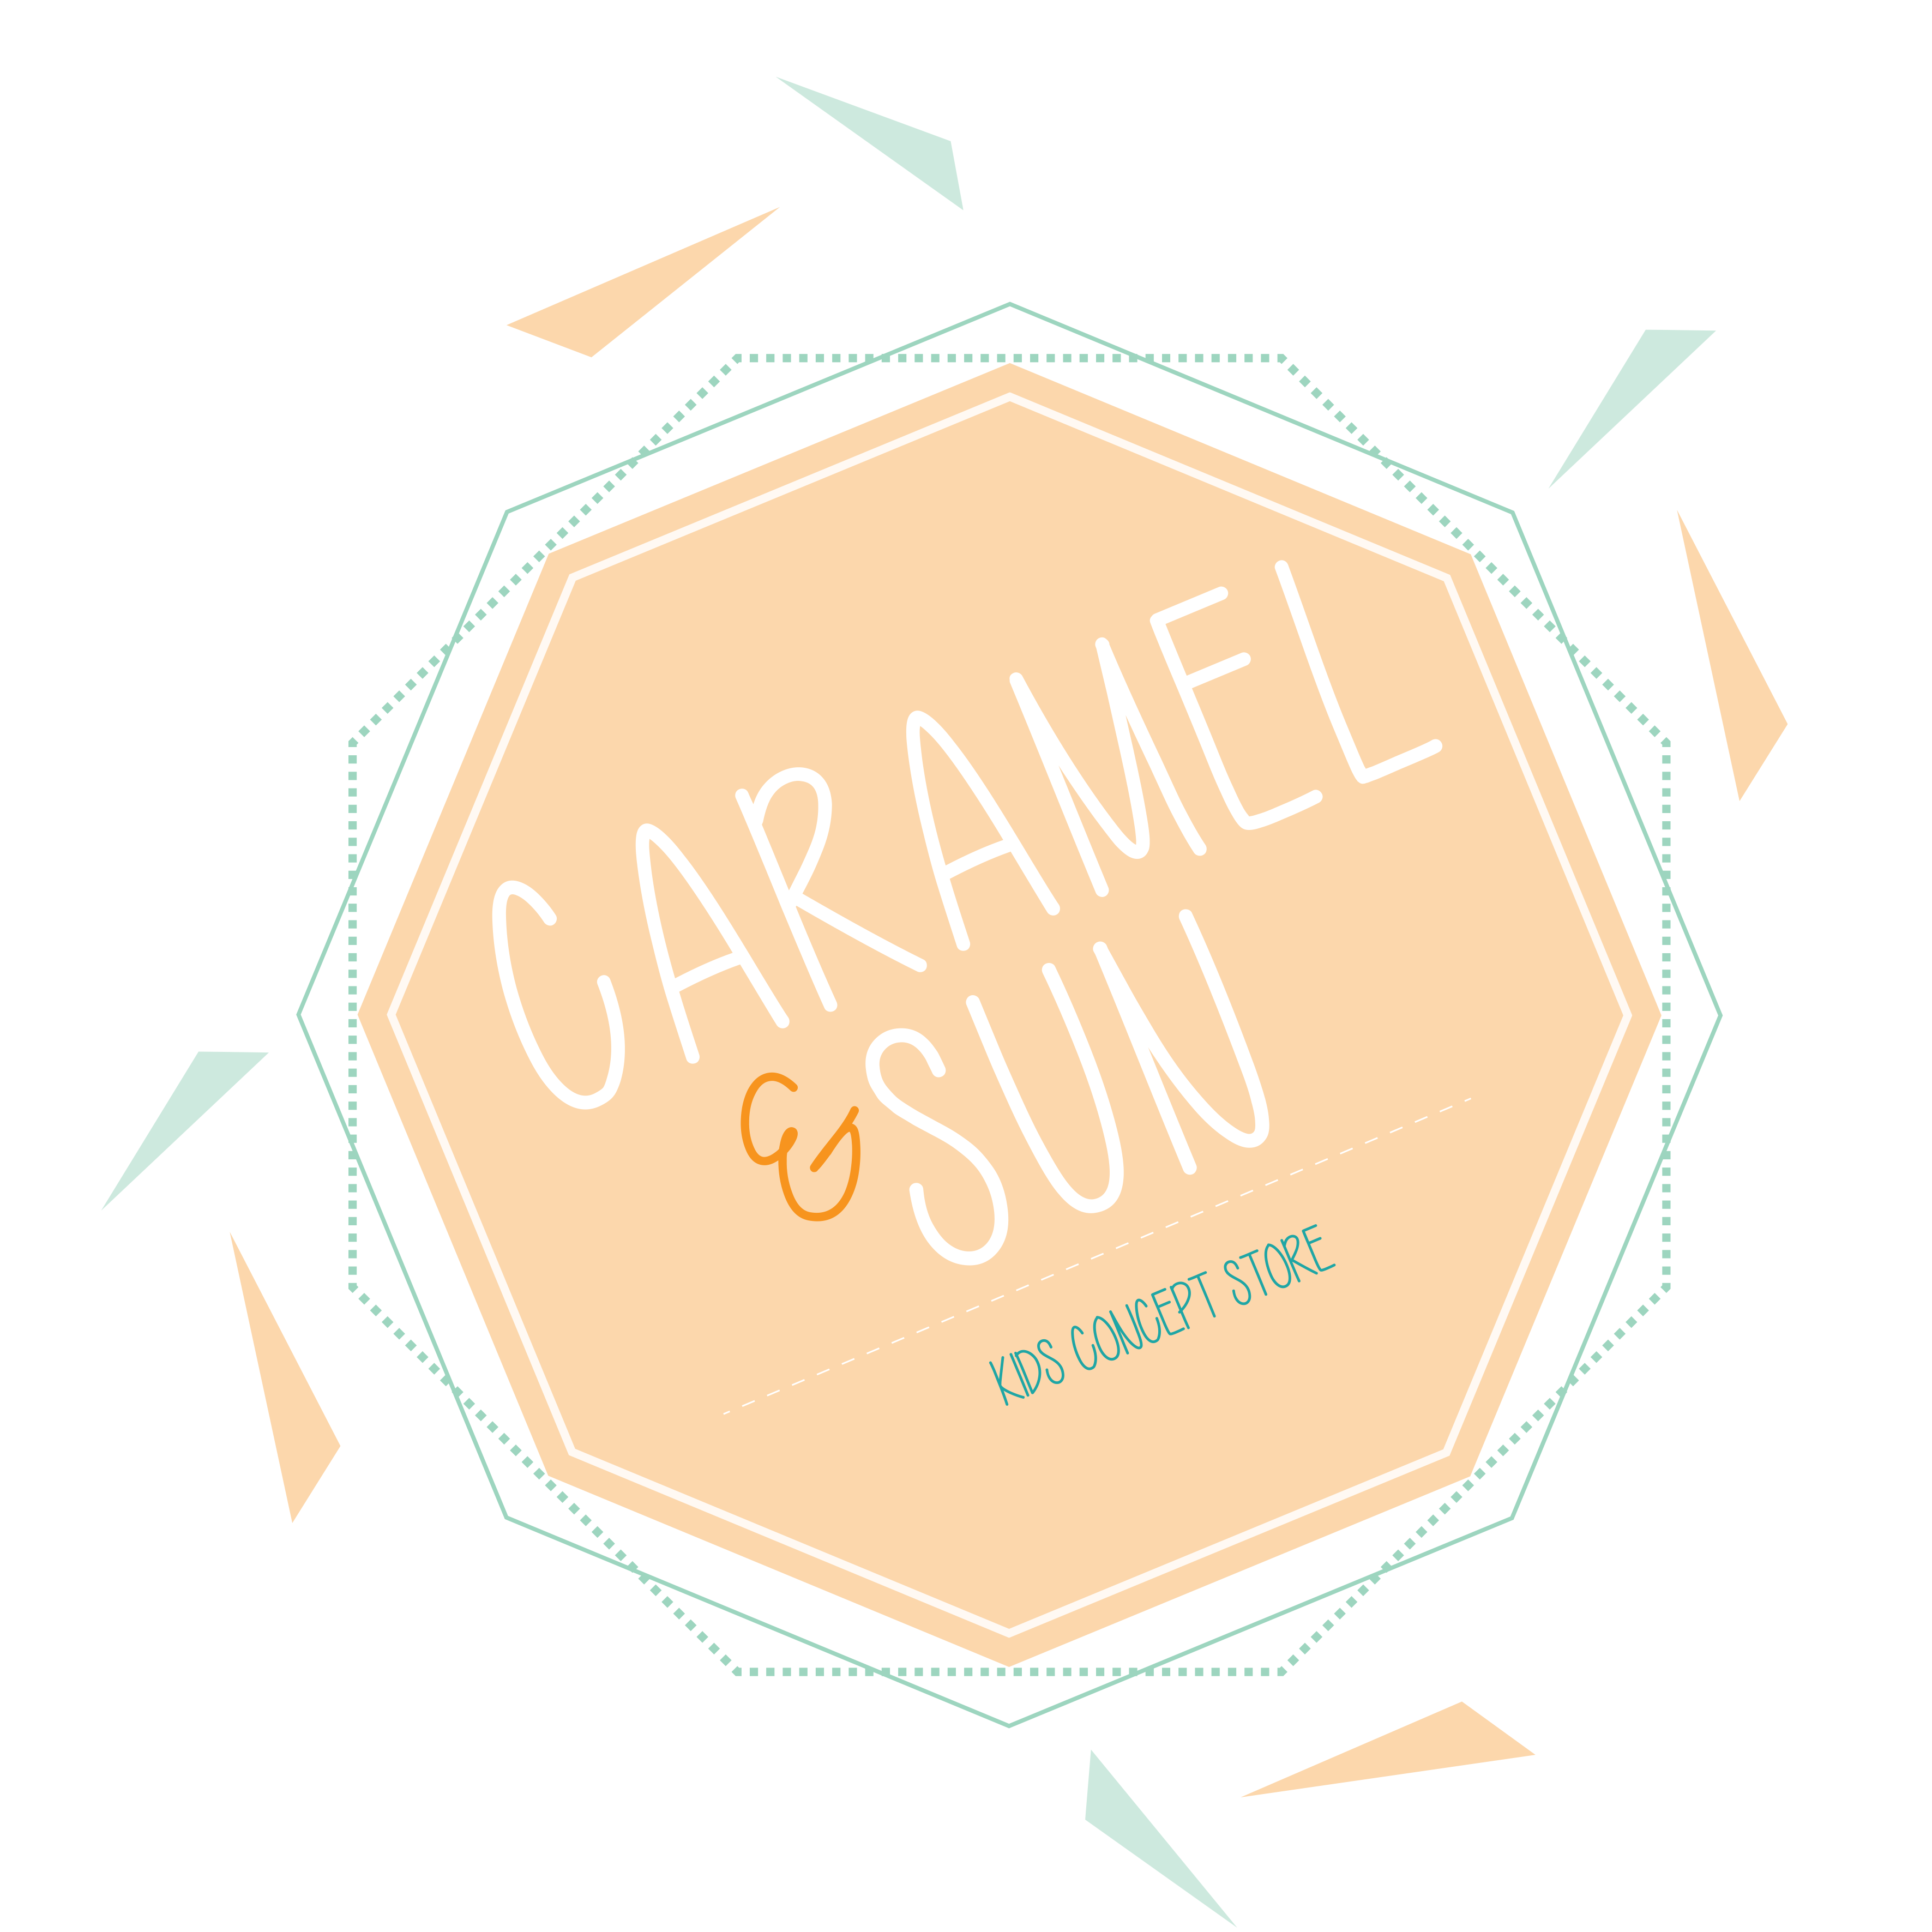 Caramel and Sun